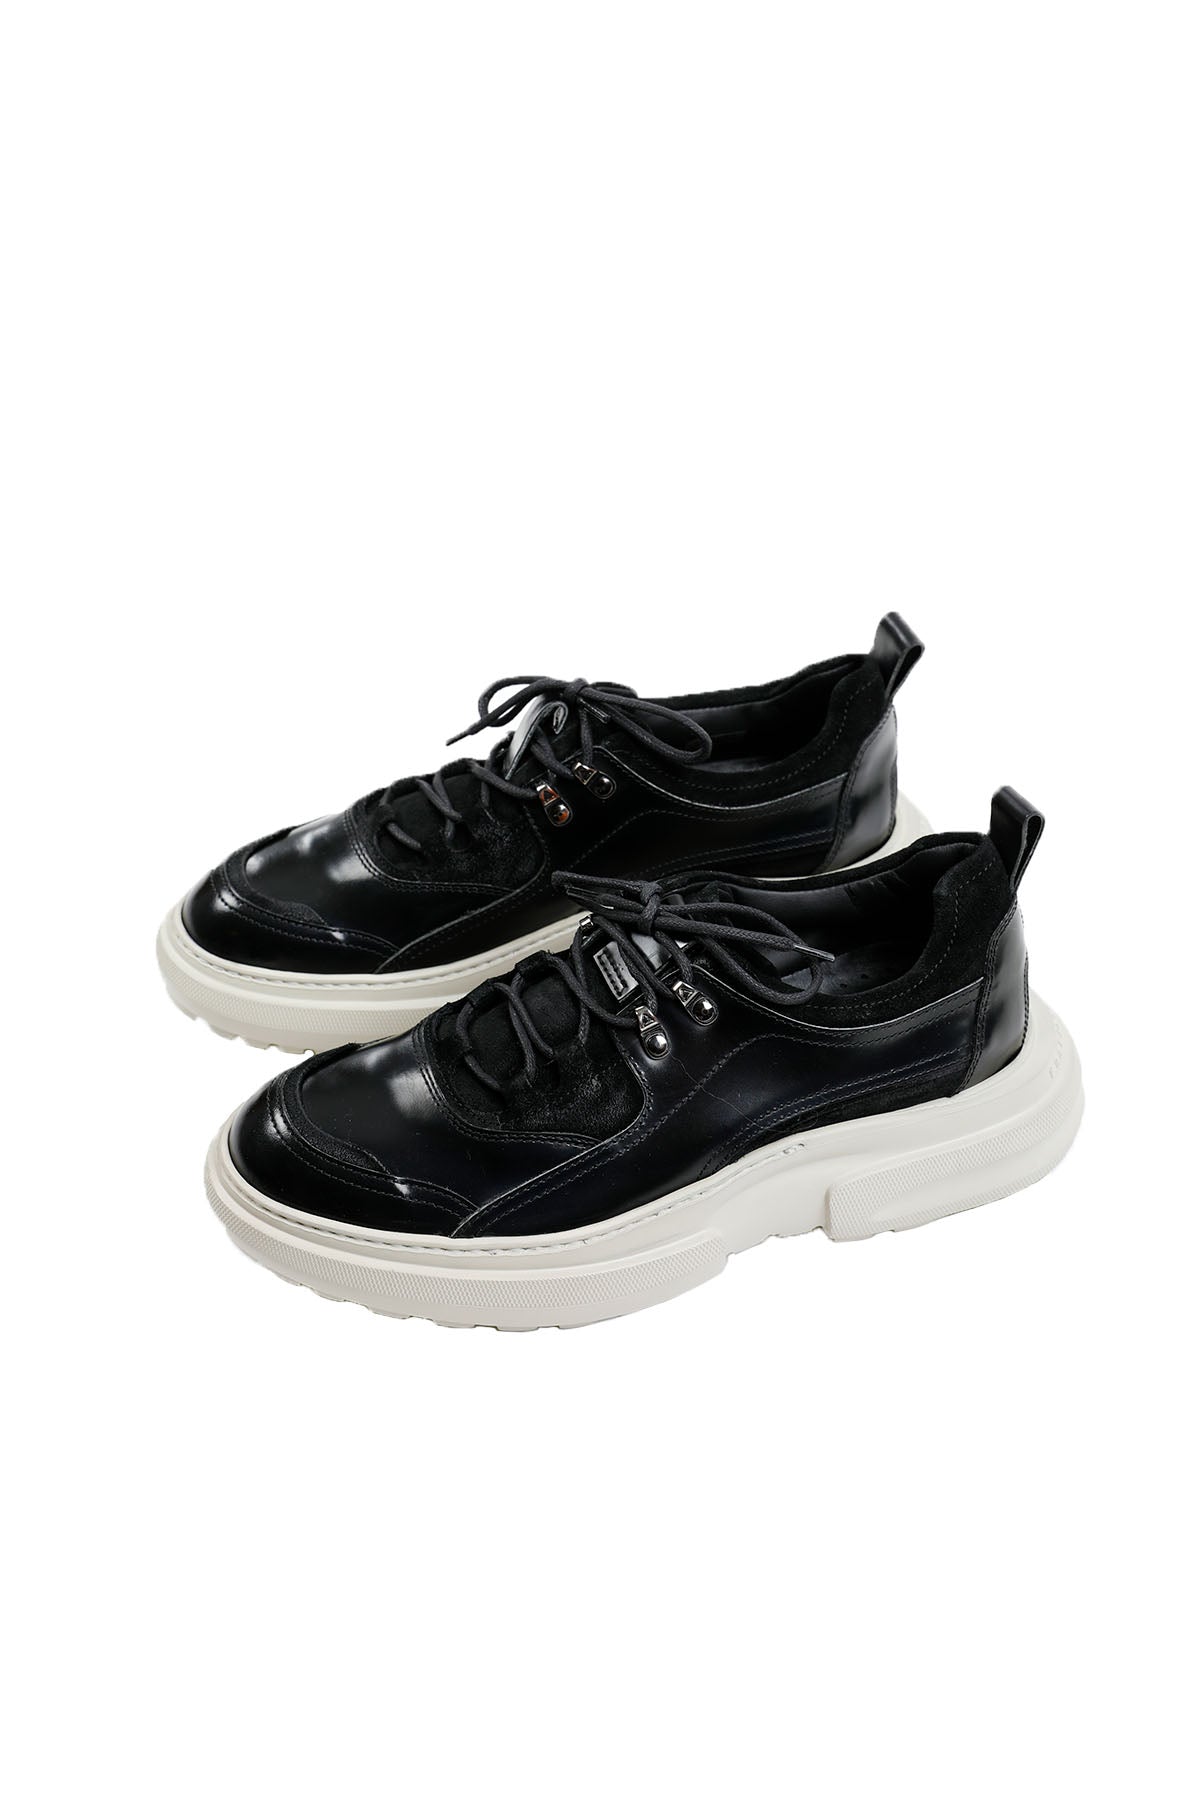 Fratelli Rossetti Casual Sneaker Ayakkabı-Libas Trendy Fashion Store